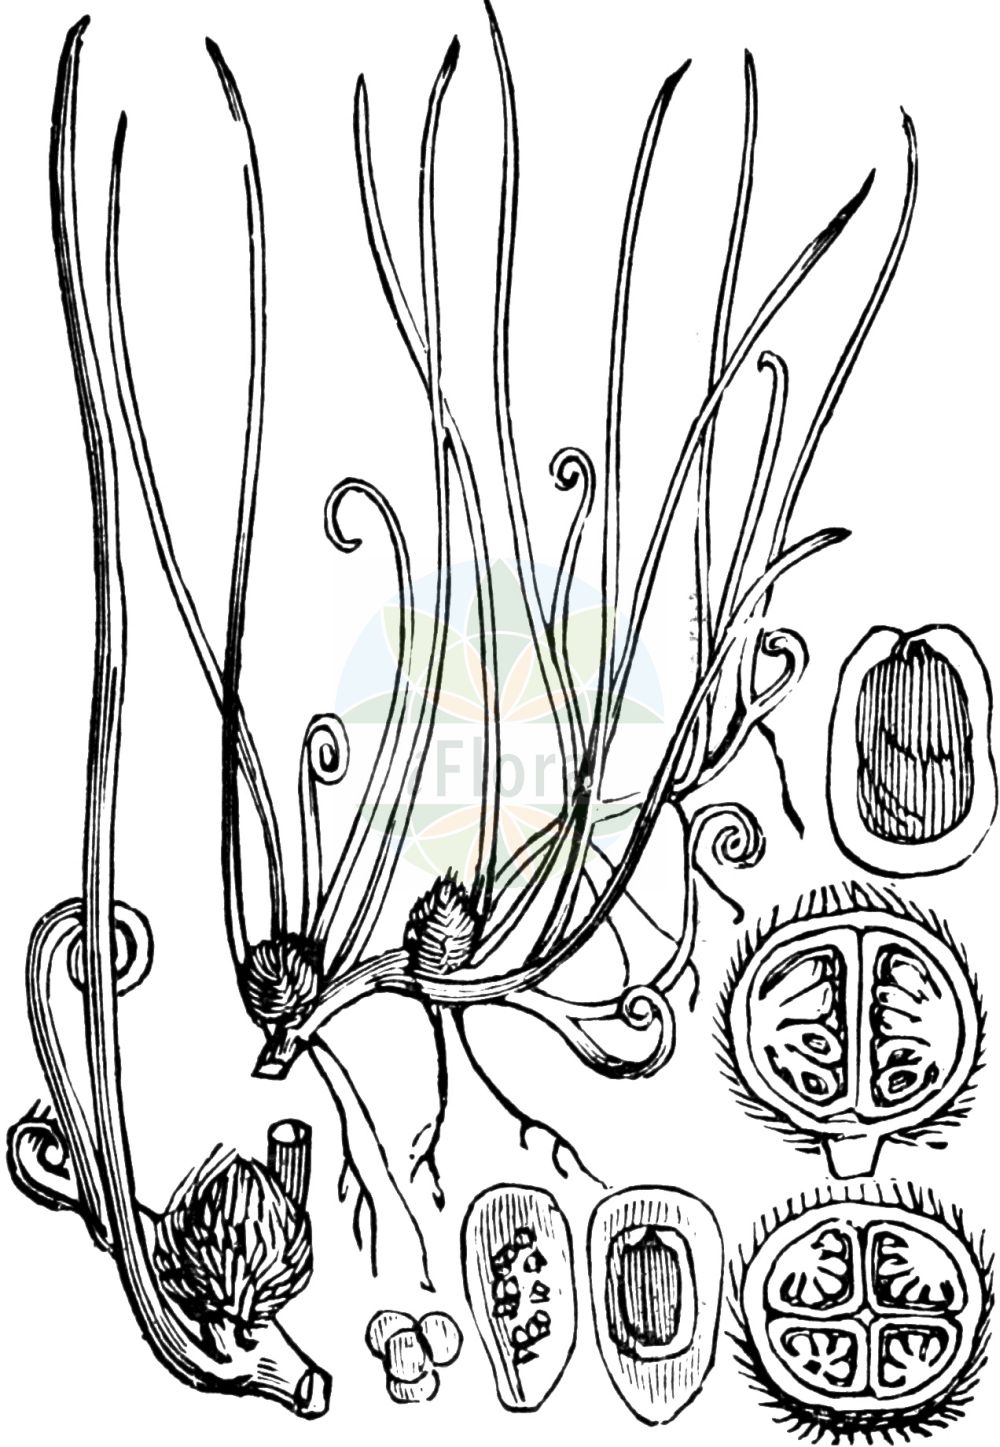 Historische Abbildung von Pilularia globulifera (Kugel-Pillenfarn - Pillwort). Das Bild zeigt Blatt, Bluete, Frucht und Same. ---- Historical Drawing of Pilularia globulifera (Kugel-Pillenfarn - Pillwort). The image is showing leaf, flower, fruit and seed.(Pilularia globulifera,Kugel-Pillenfarn,Pillwort,Pilularia globulifera,Kugel-Pillenfarn,Pillenfarn,Pillwort,Pilularia,Pillenfarn,Pillwort,Marsileaceae,Kleefarngewächse,Waterclover family,Blatt,Bluete,Frucht,Same,leaf,flower,fruit,seed,Fitch et al. (1880))